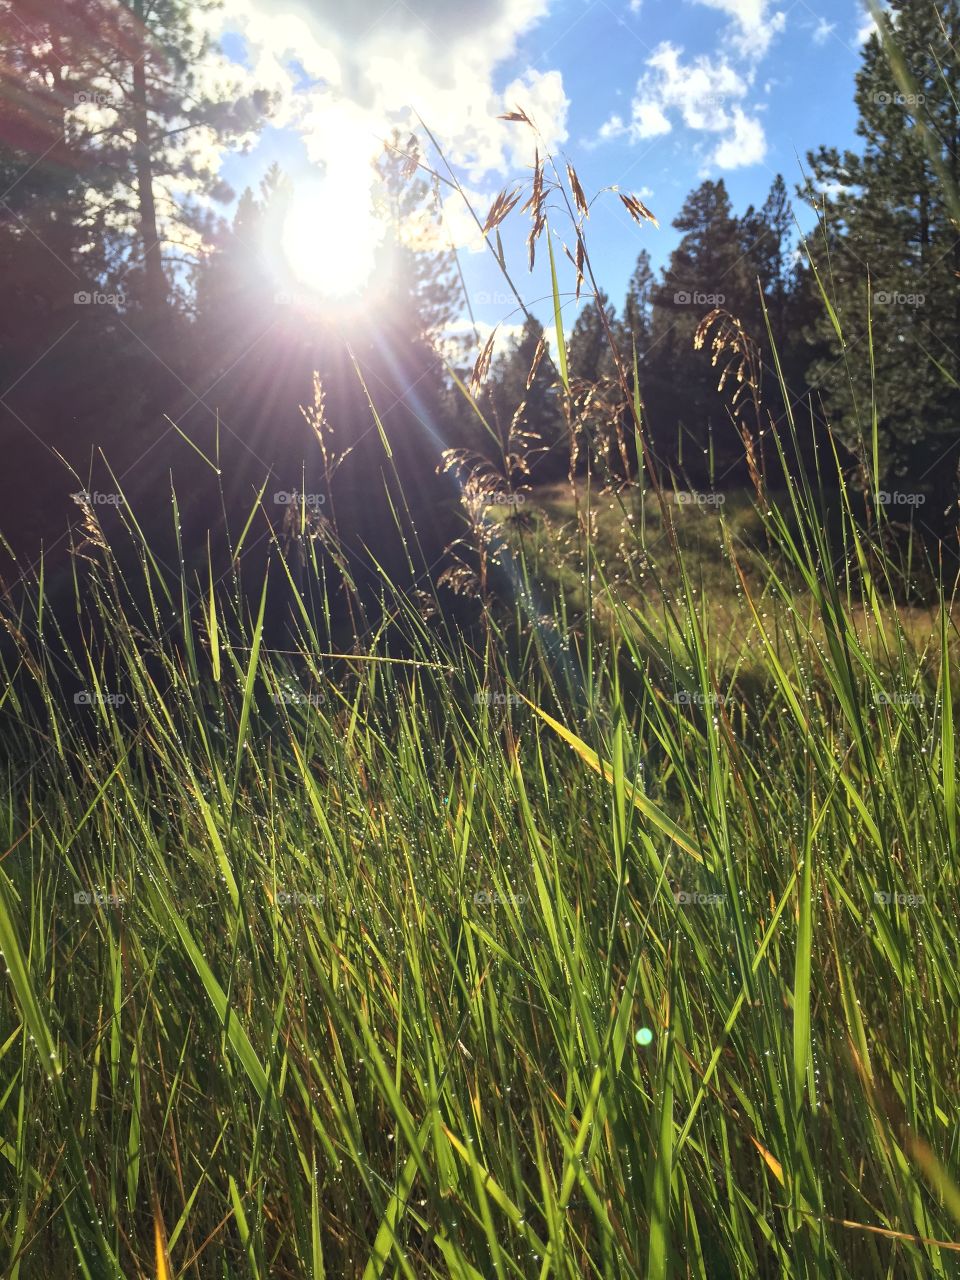 Wet grass on a Montana walk.